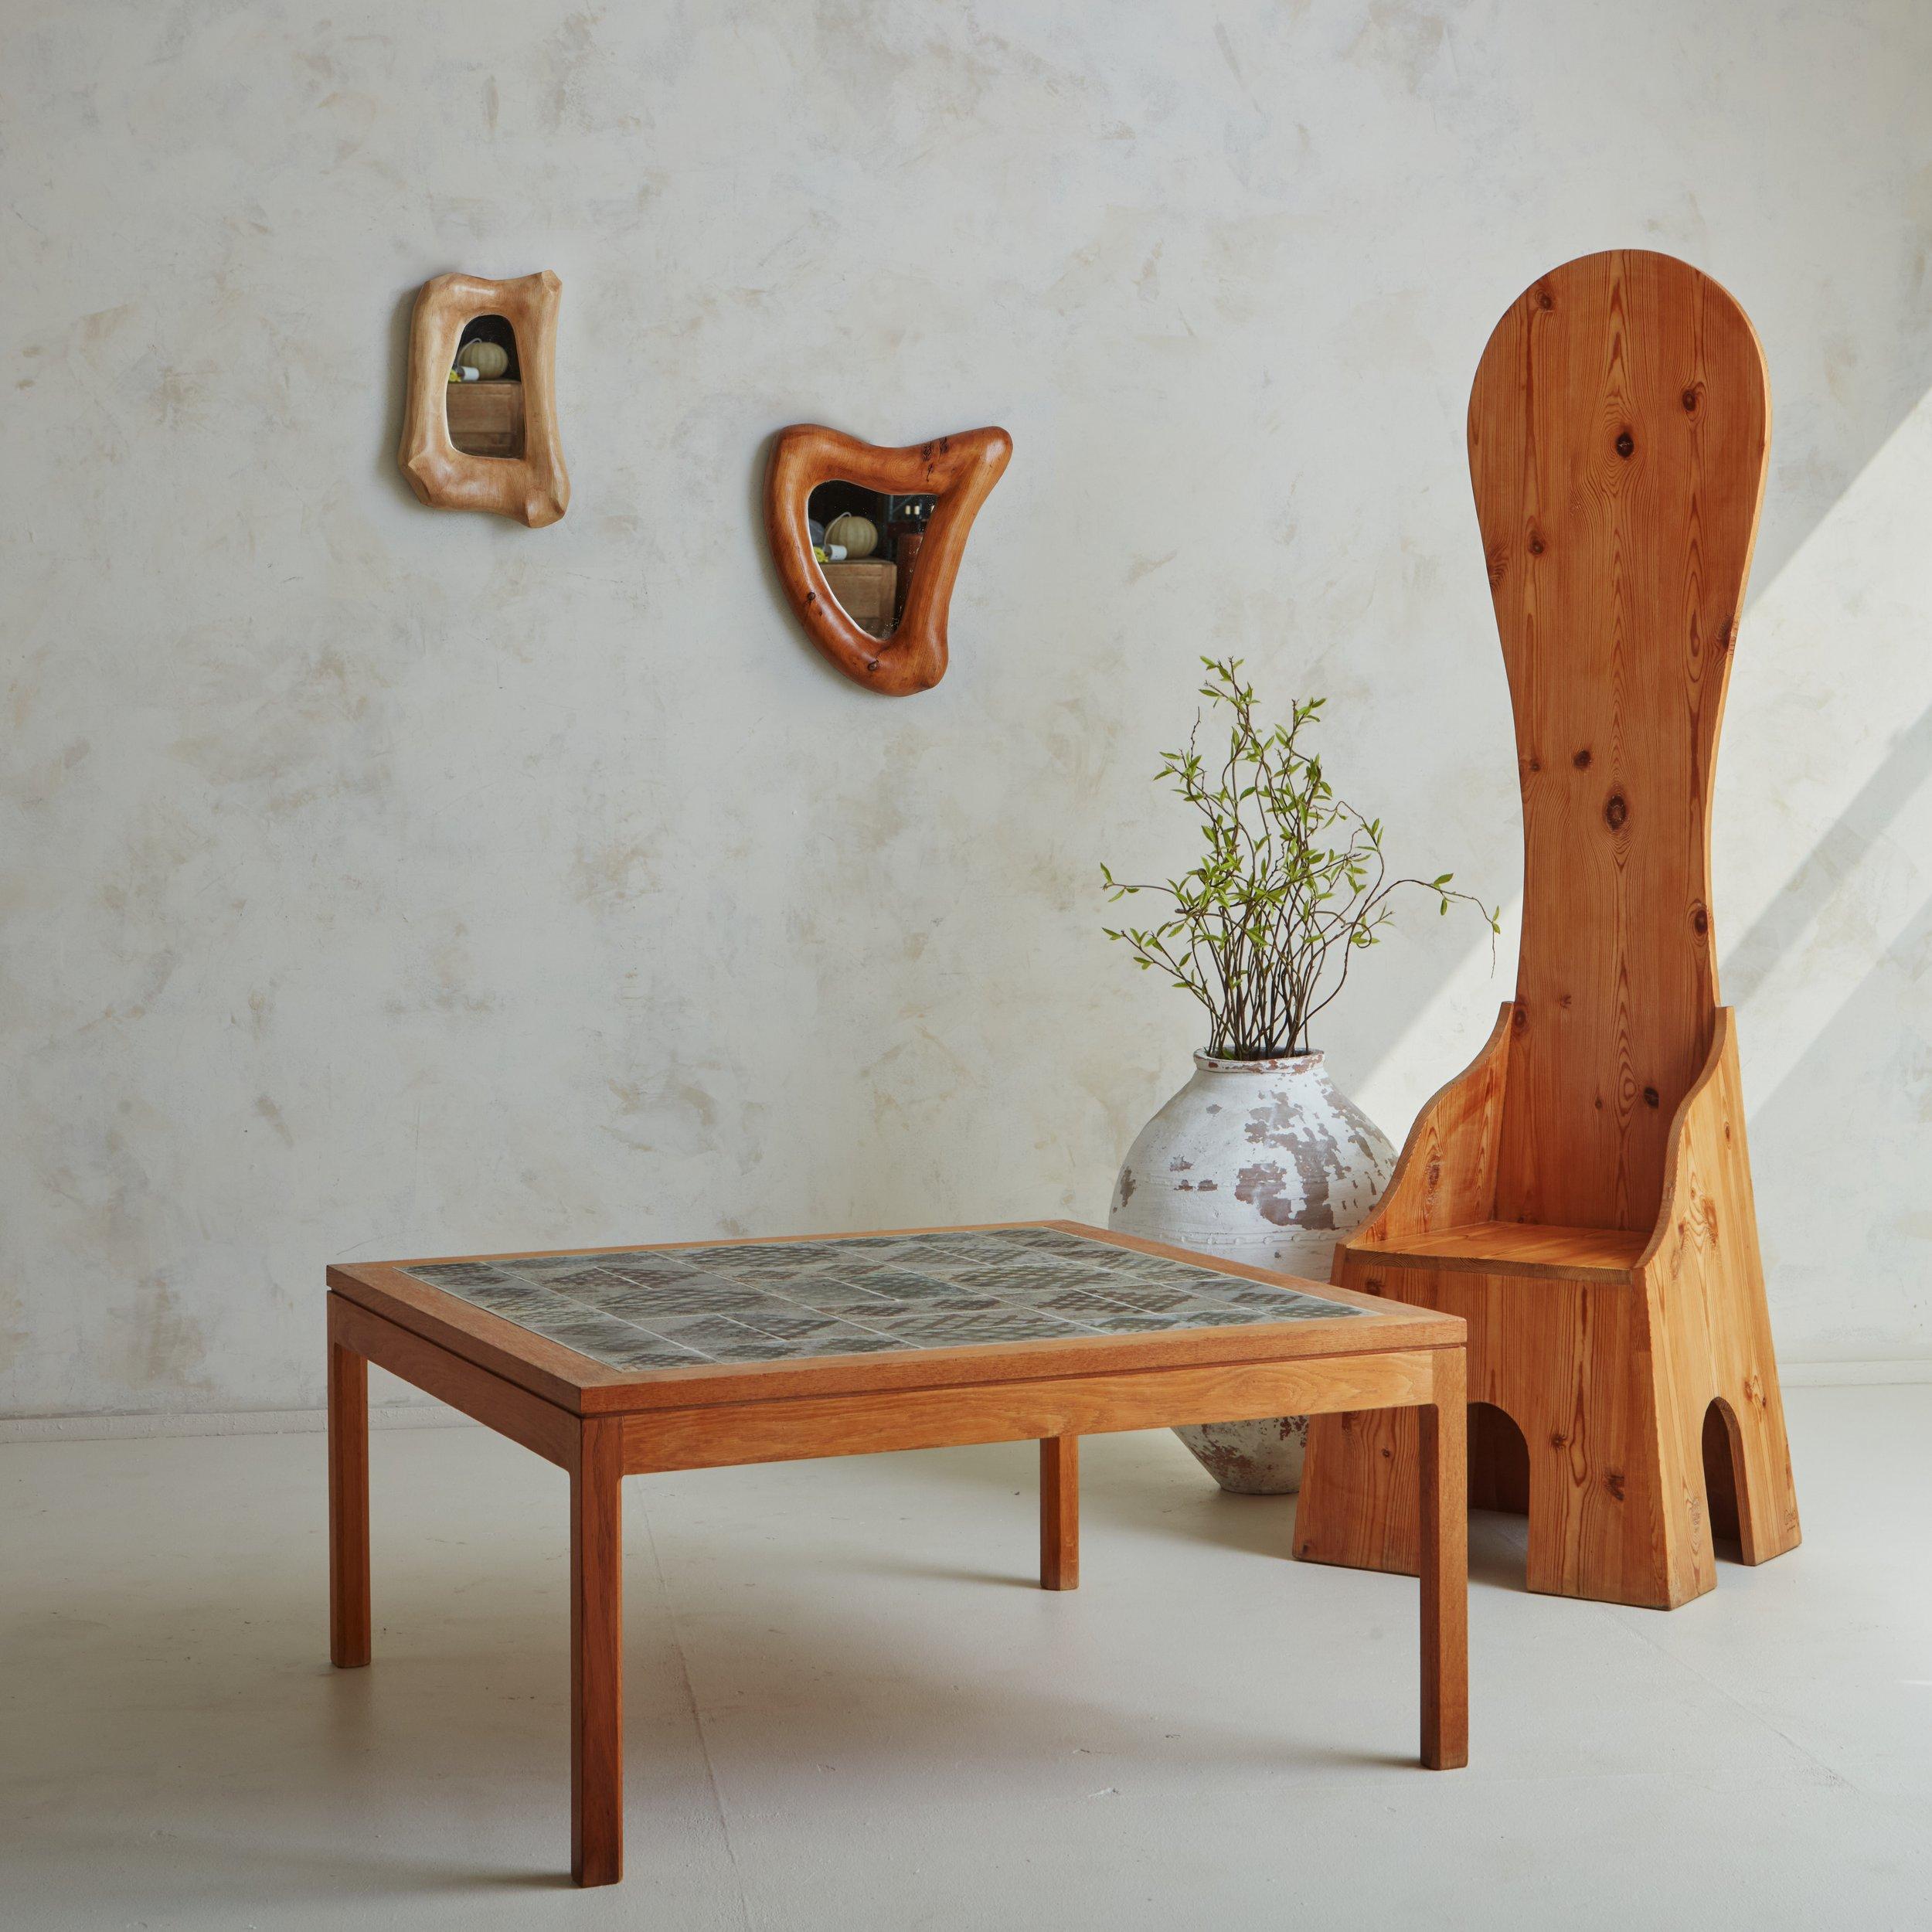 Table basse des années 1970 du céramiste danois Tue Poulsen (né en 1939). Cette table présente une structure carrée en bois de chêne avec de magnifiques veinures et des pieds en blocs. Le plateau de la table est composé de magnifiques carreaux de